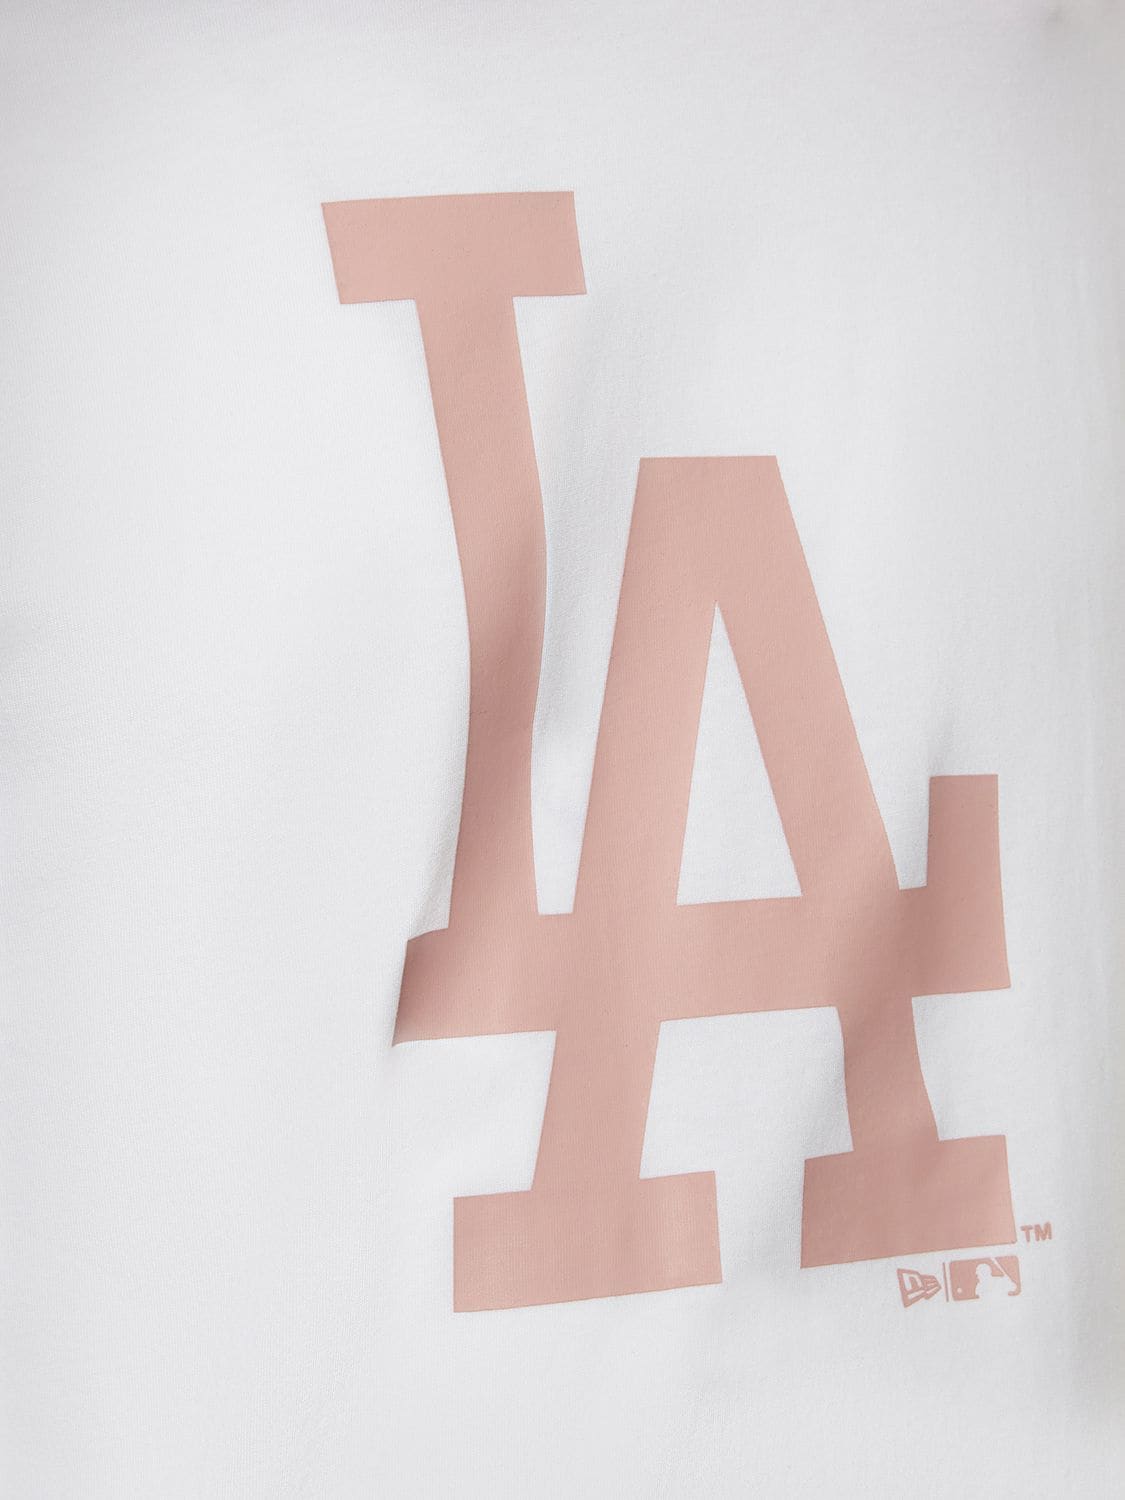 New Era L.a Dodgers T-shirt - White, ModeSens